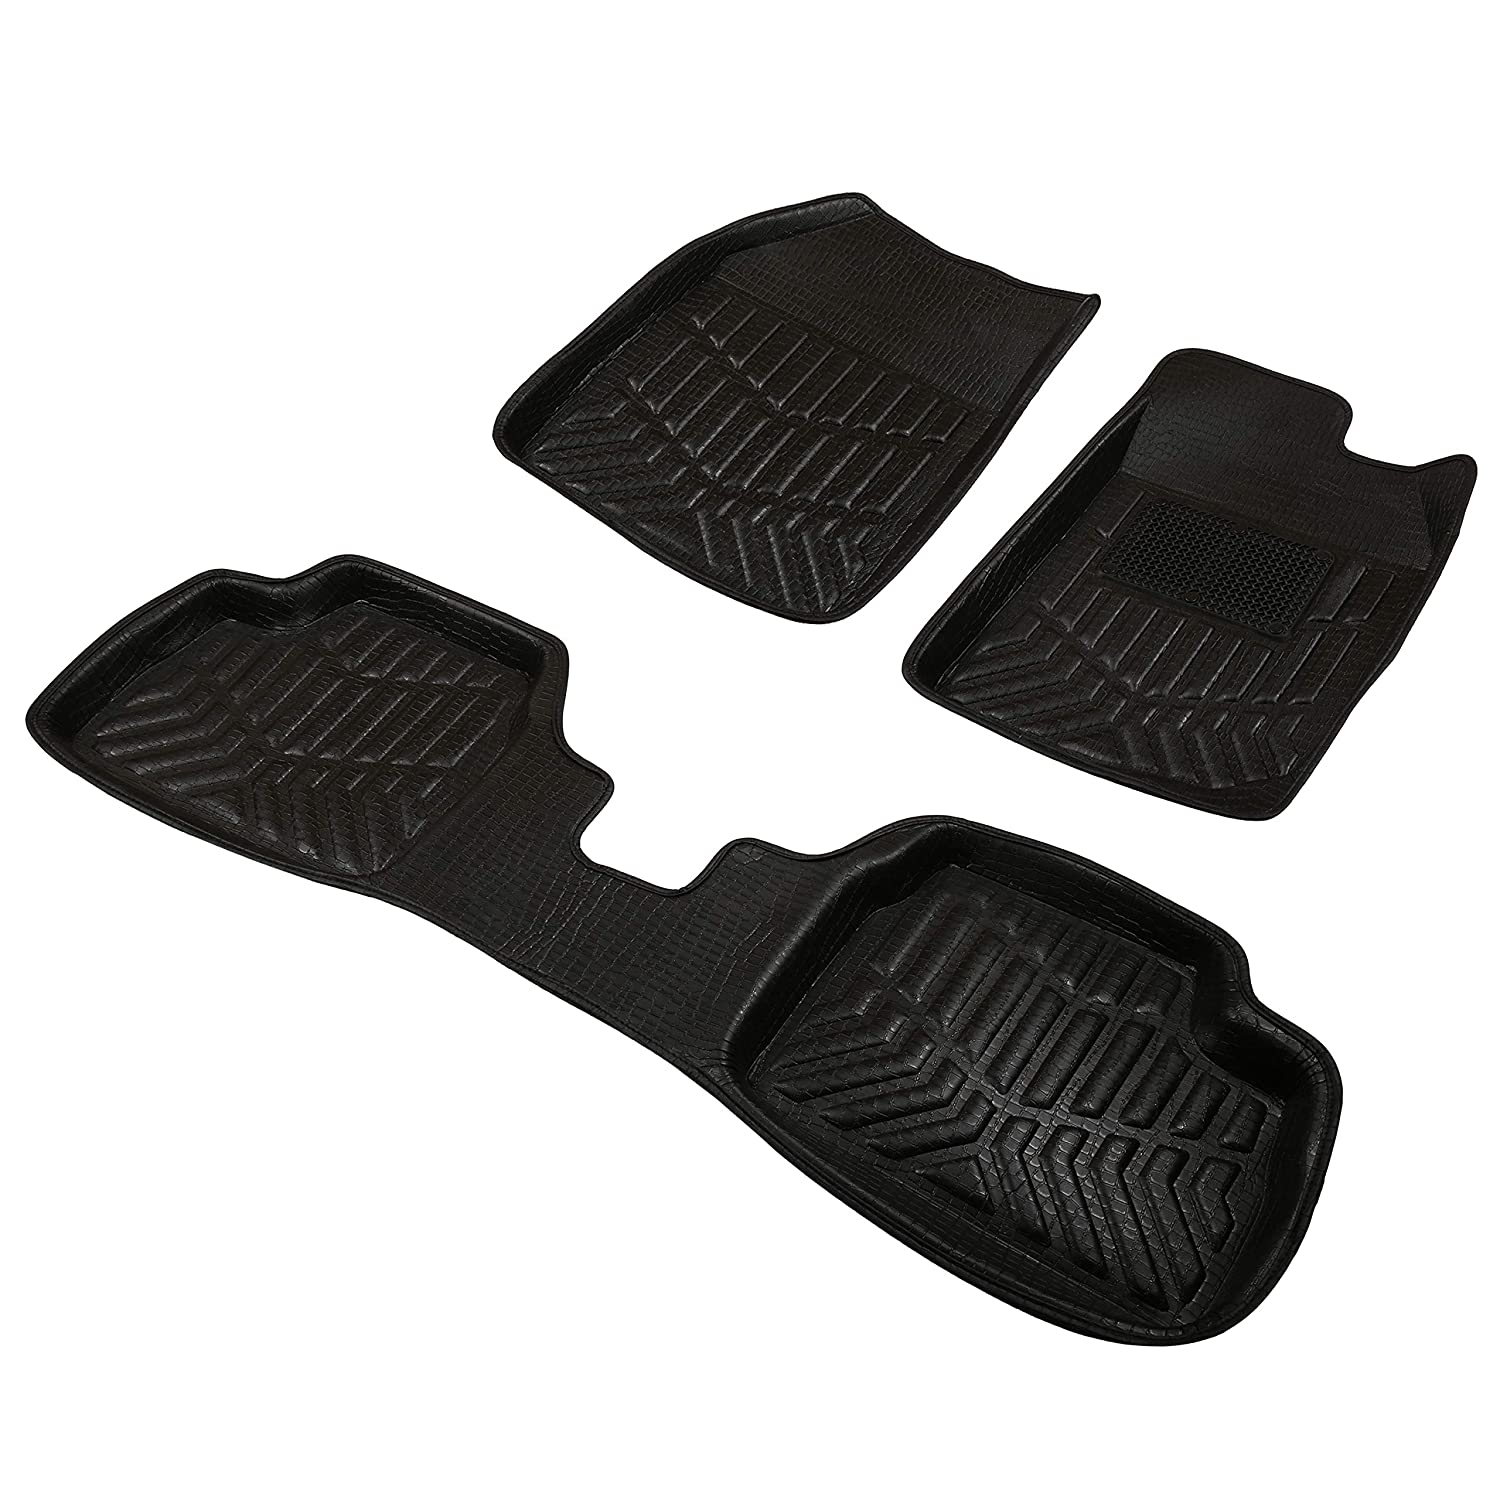 Drivn 3D Customised Car Floor Mat for Tata Nexon - Black (Set of 3)